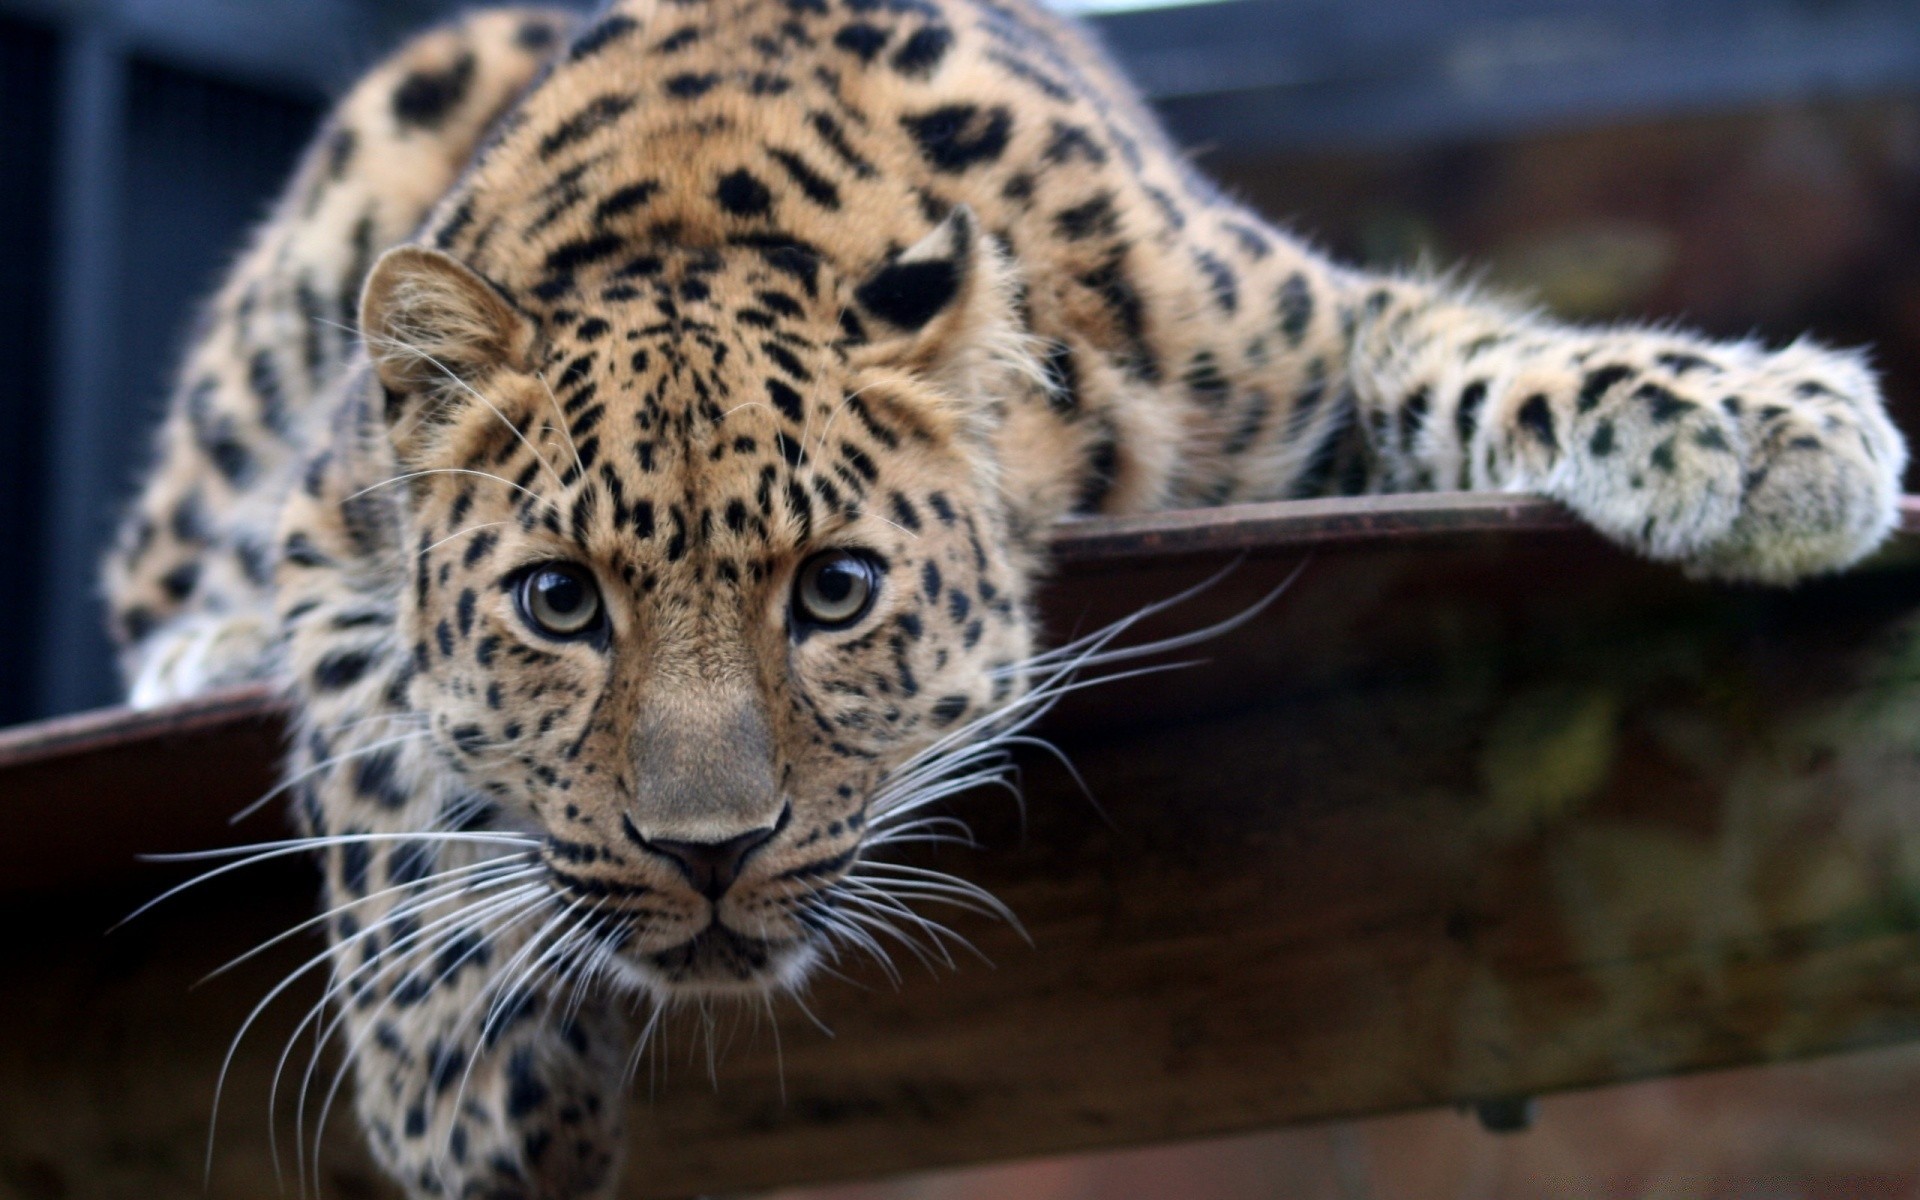 животные кошка дикой природы млекопитающее леопард хищник животное зоопарк мясоед дикий охотник сафари природа опасность большой мех тигр